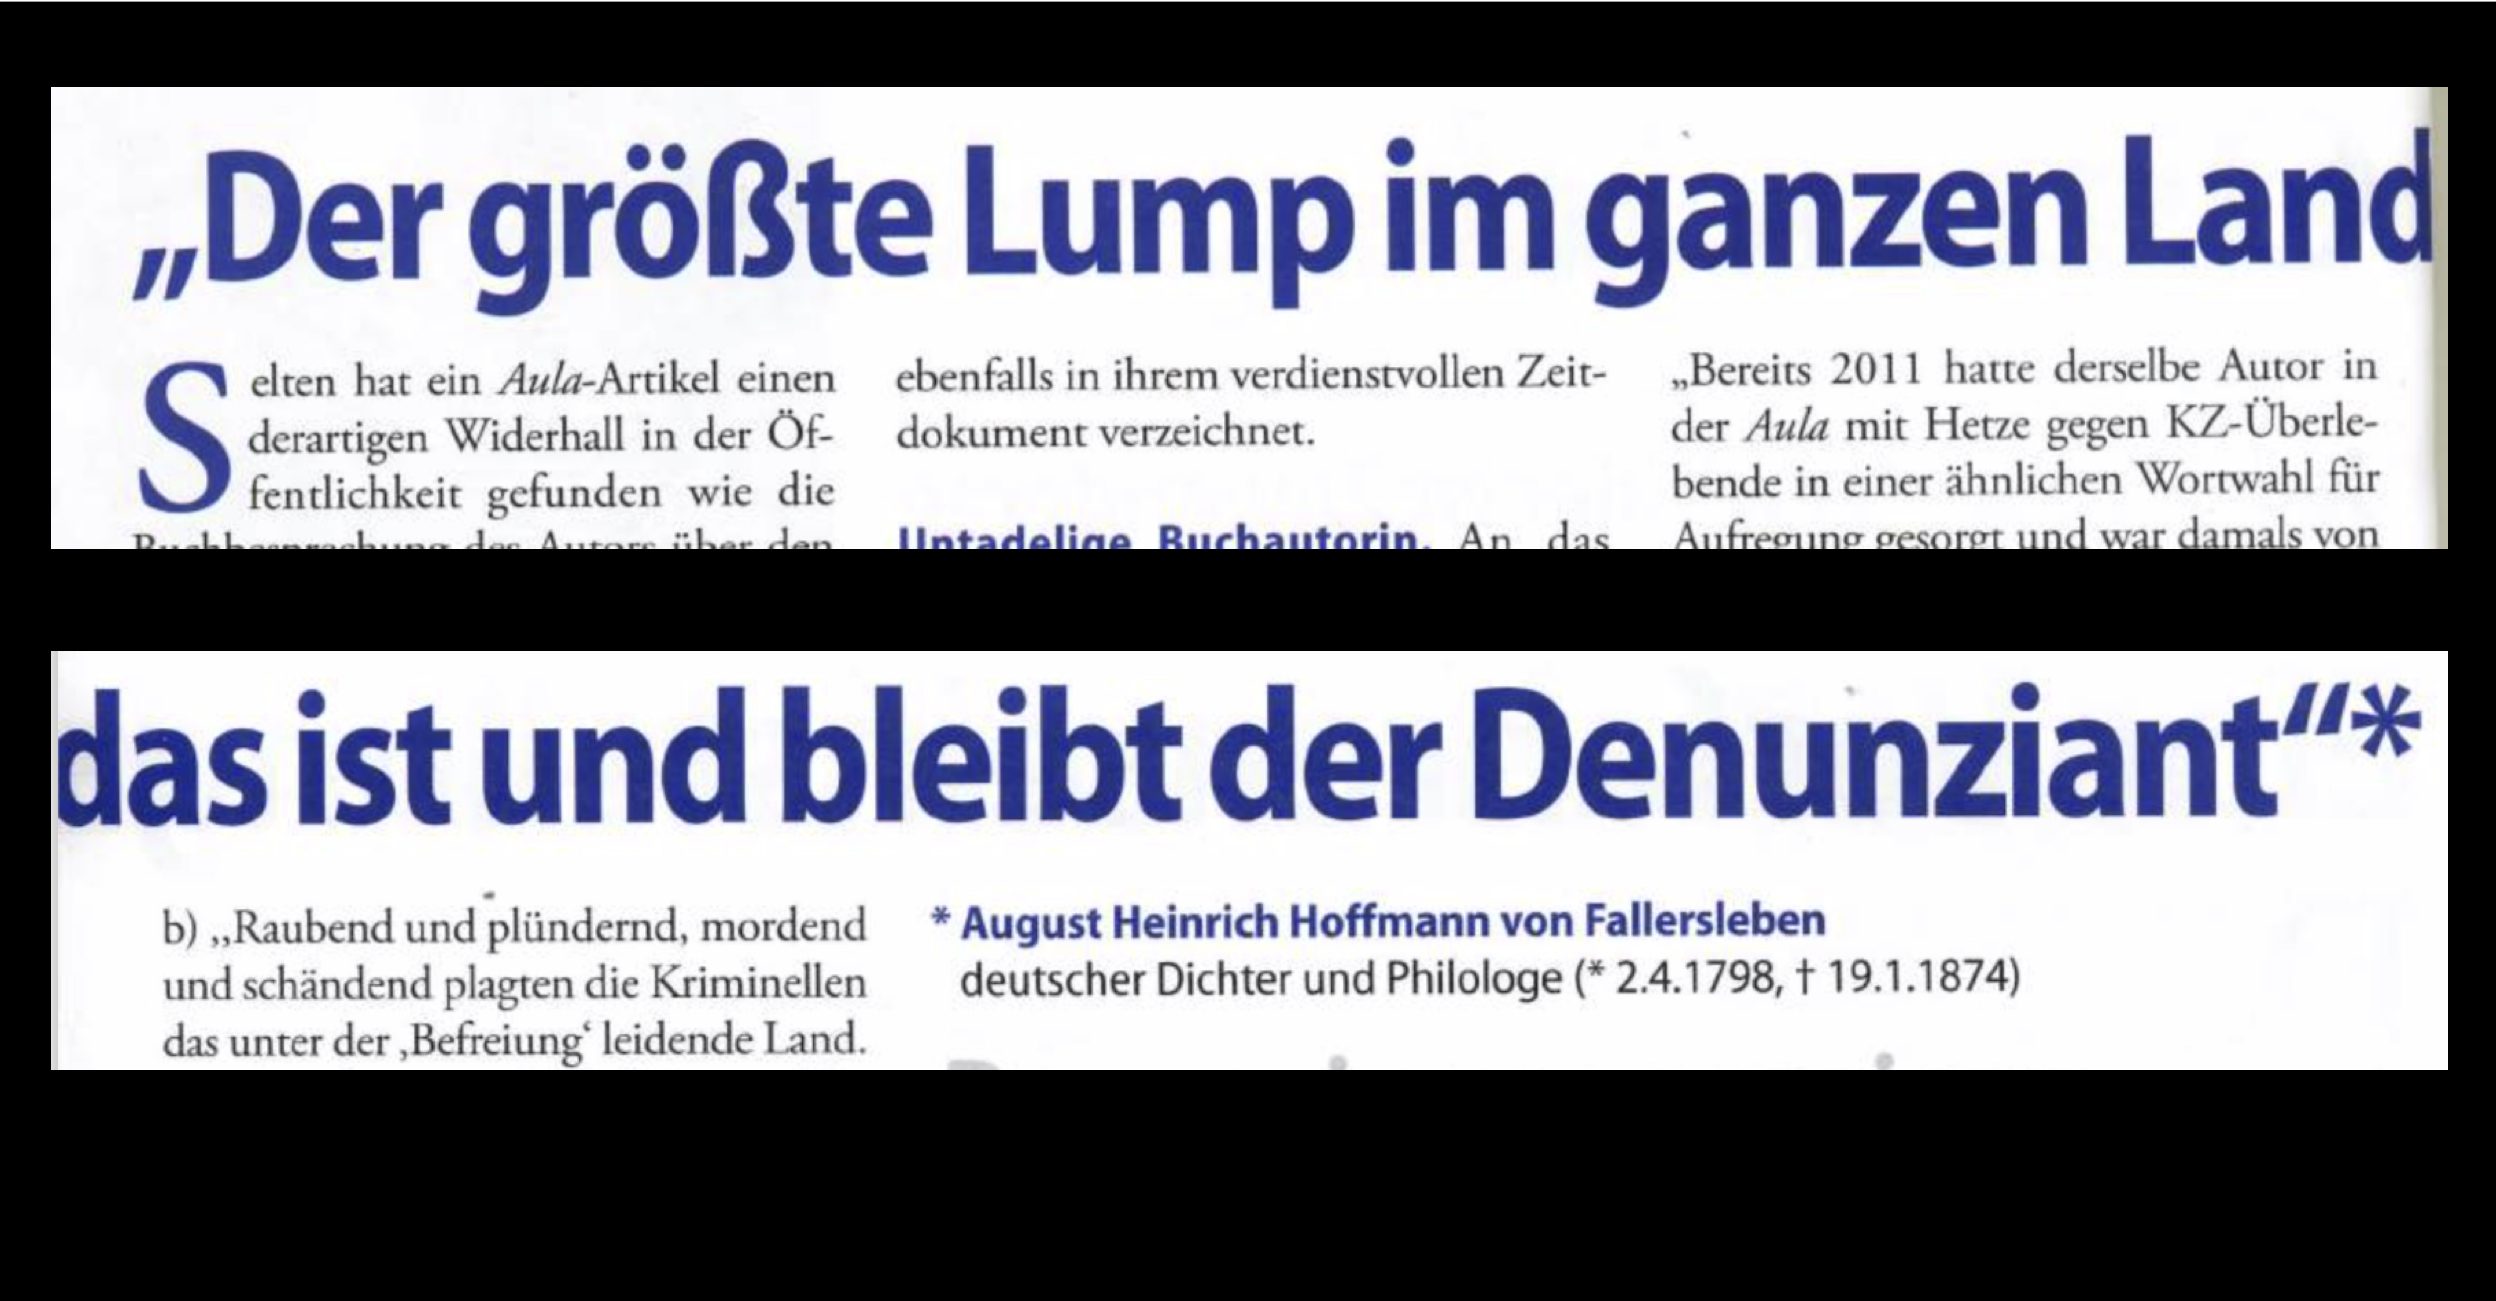 Aula-Artikel Febr. 2016, in dem die diffamierenden Zitate zu den KZ-Überlebenden wortwörtlich wiederholt und der ehemalige Grüne Abgeordnete Harald Walser u.a. als "Lump" beschimpft wurde.